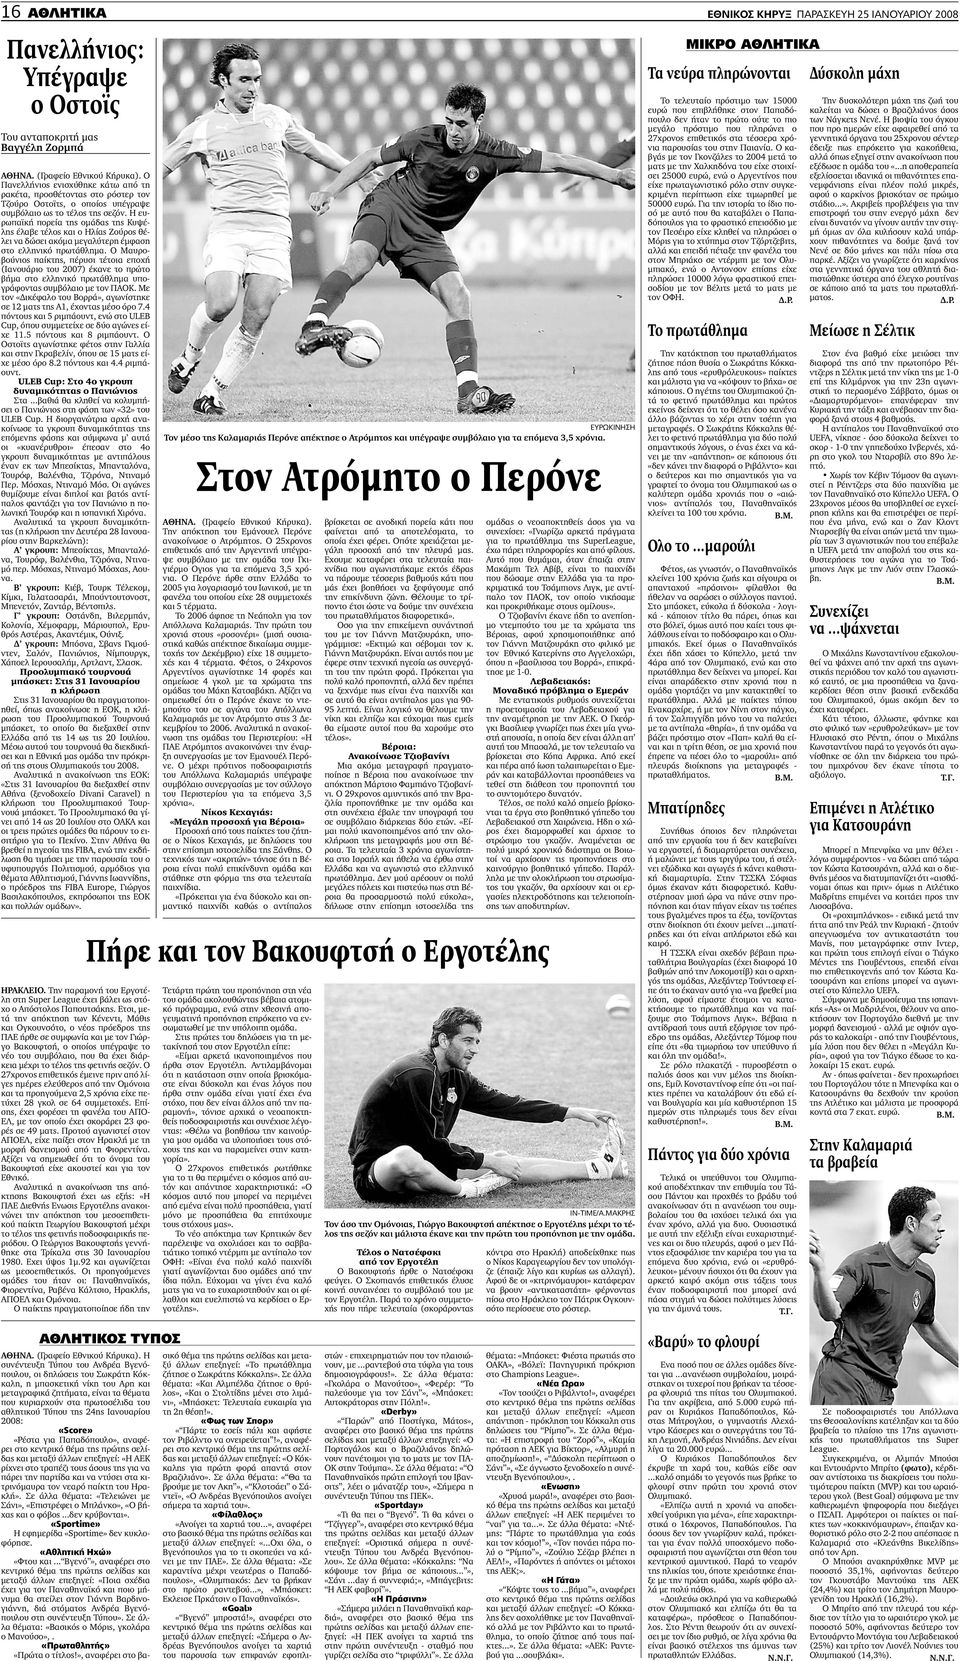 Ο Μαυροβούνιος παίκτης, πέρυσι τέτοια εποχή (Ιανουάριο του 2007) έκανε το πρώτο βήµα στο ελληνικό πρωτάθληµα υπογράφοντας συµβόλαιο µε τον ΠΑΟΚ.